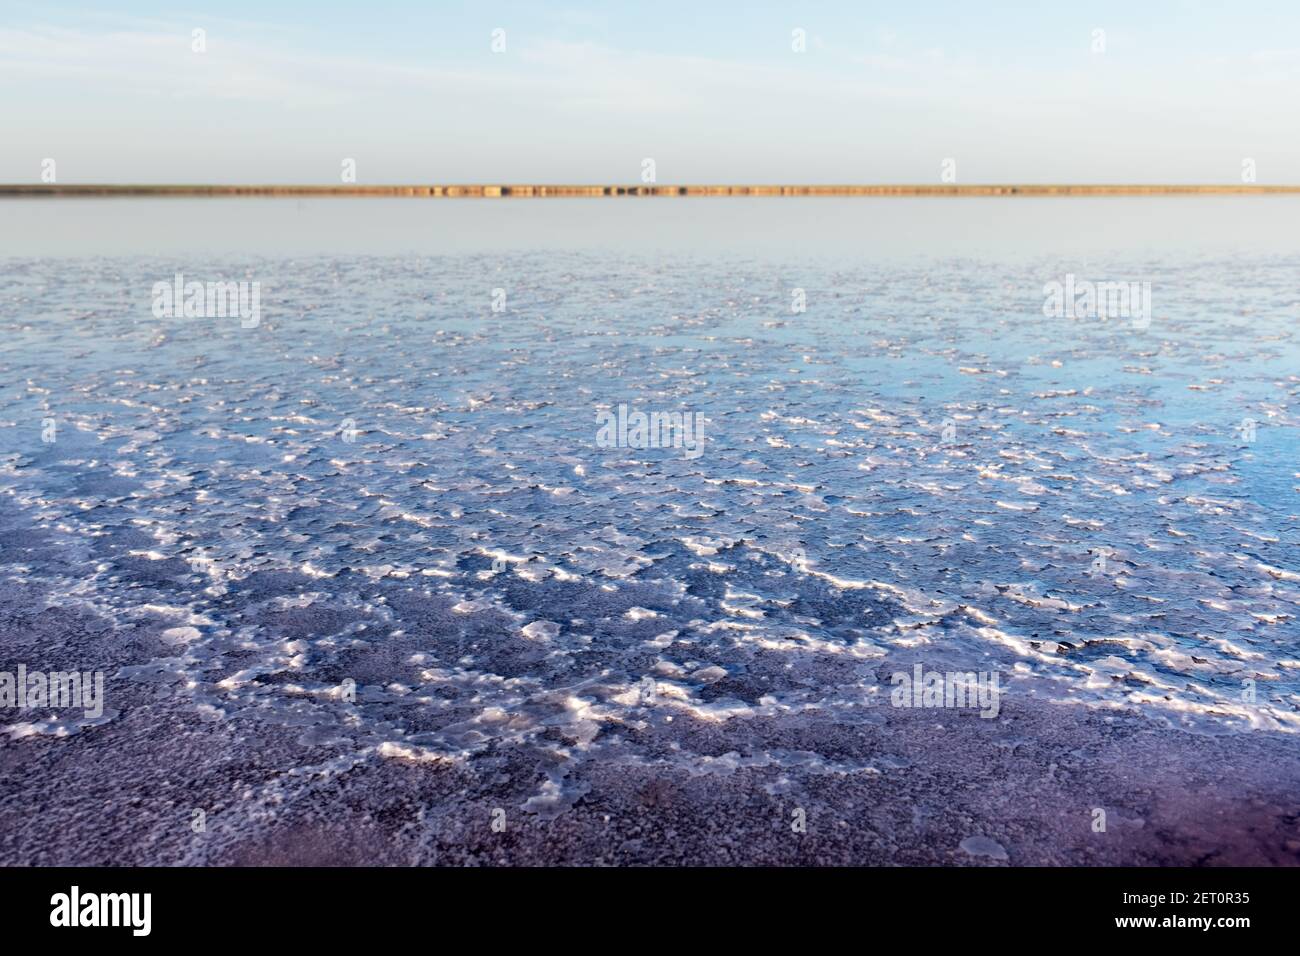 Cristalli di sale in acqua rosa lago di sale in Ucraina, Europa. Fotografia di paesaggio Foto Stock